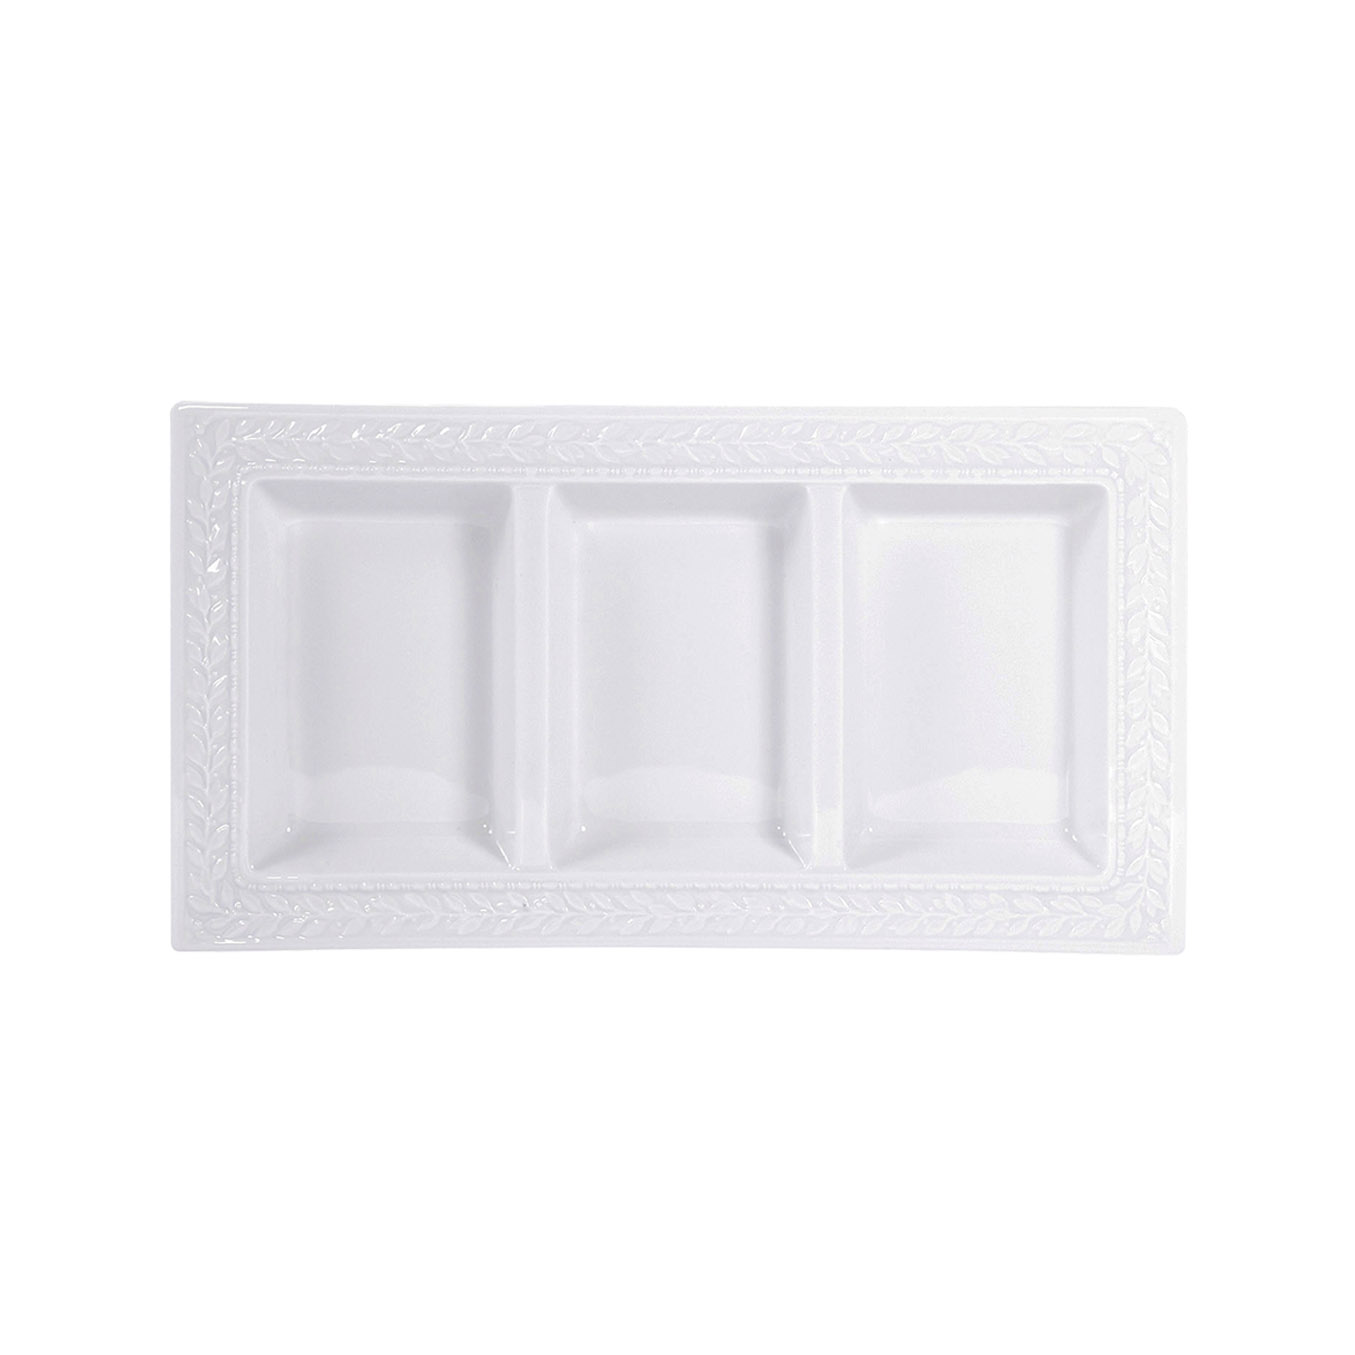 Louvre rectangular 3-compartment tray Bernardaud